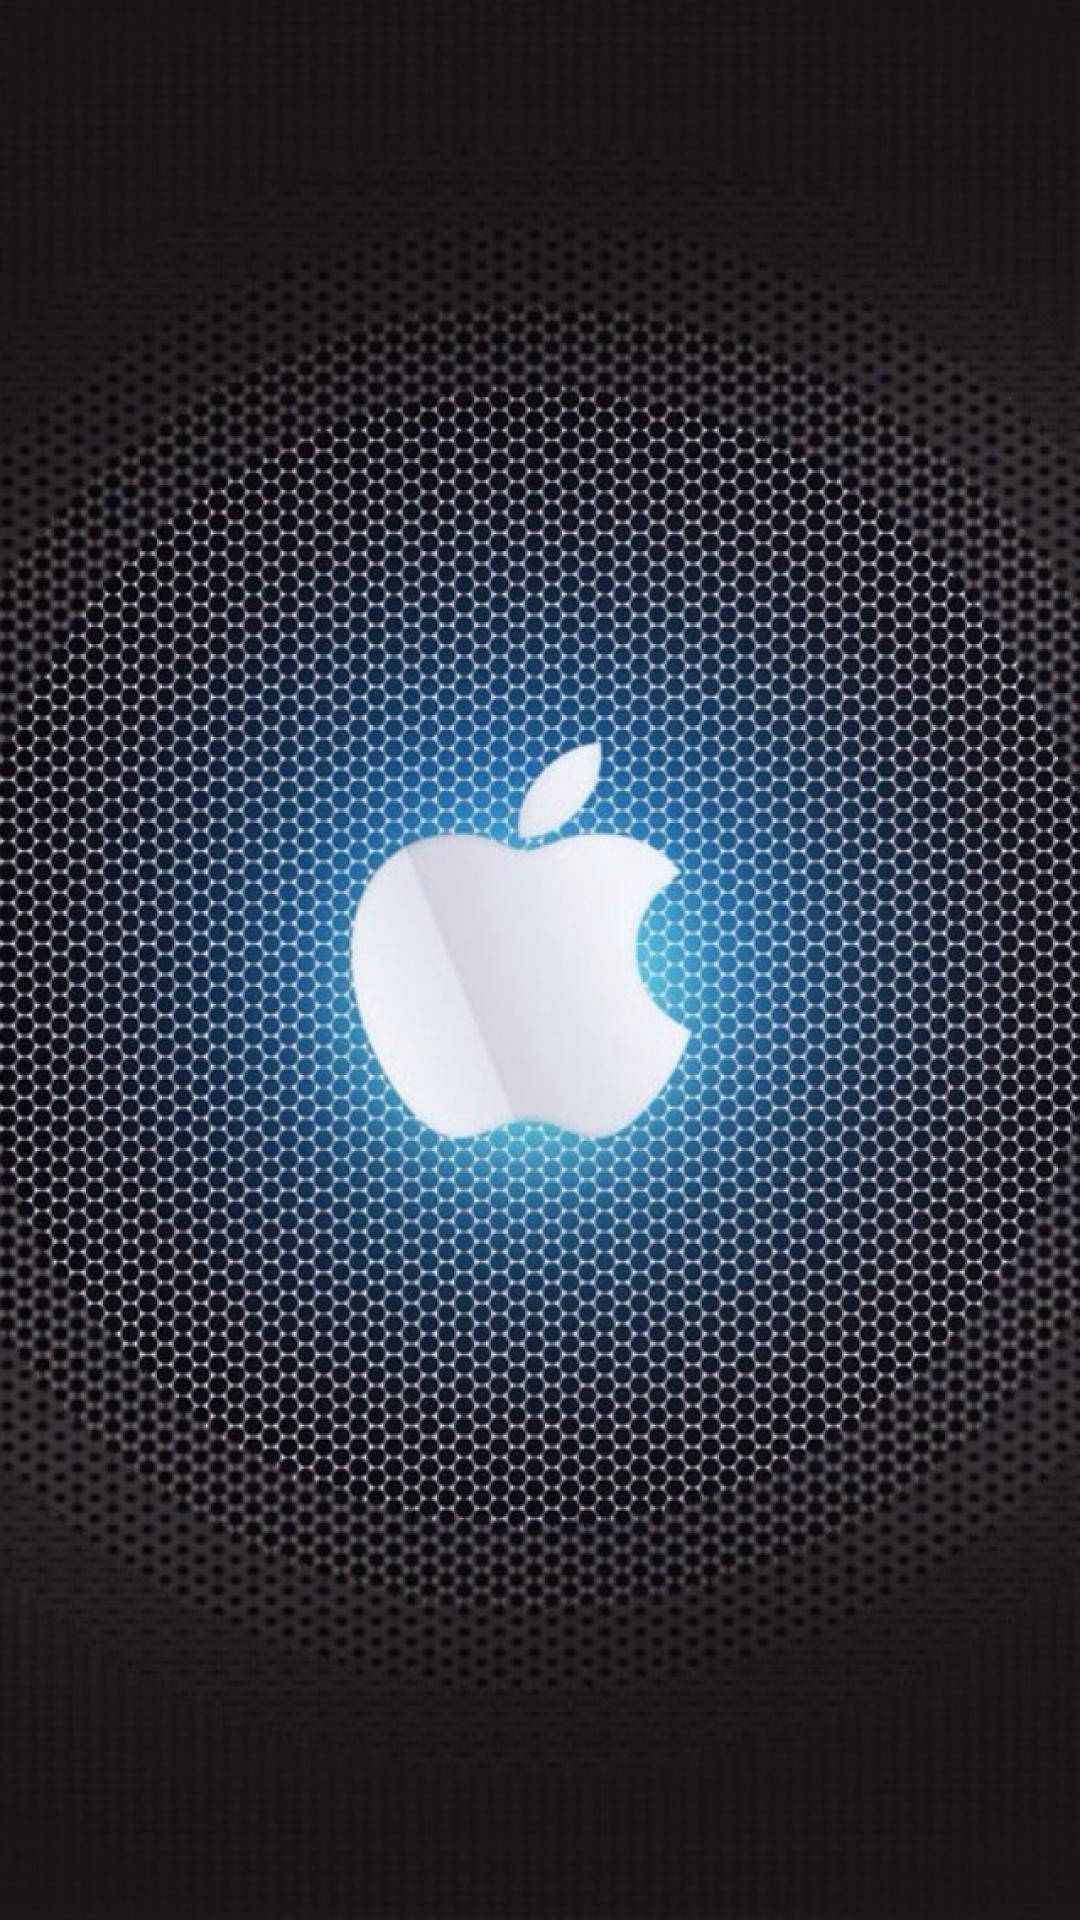 Apple Logo 4k In Digital Form Background